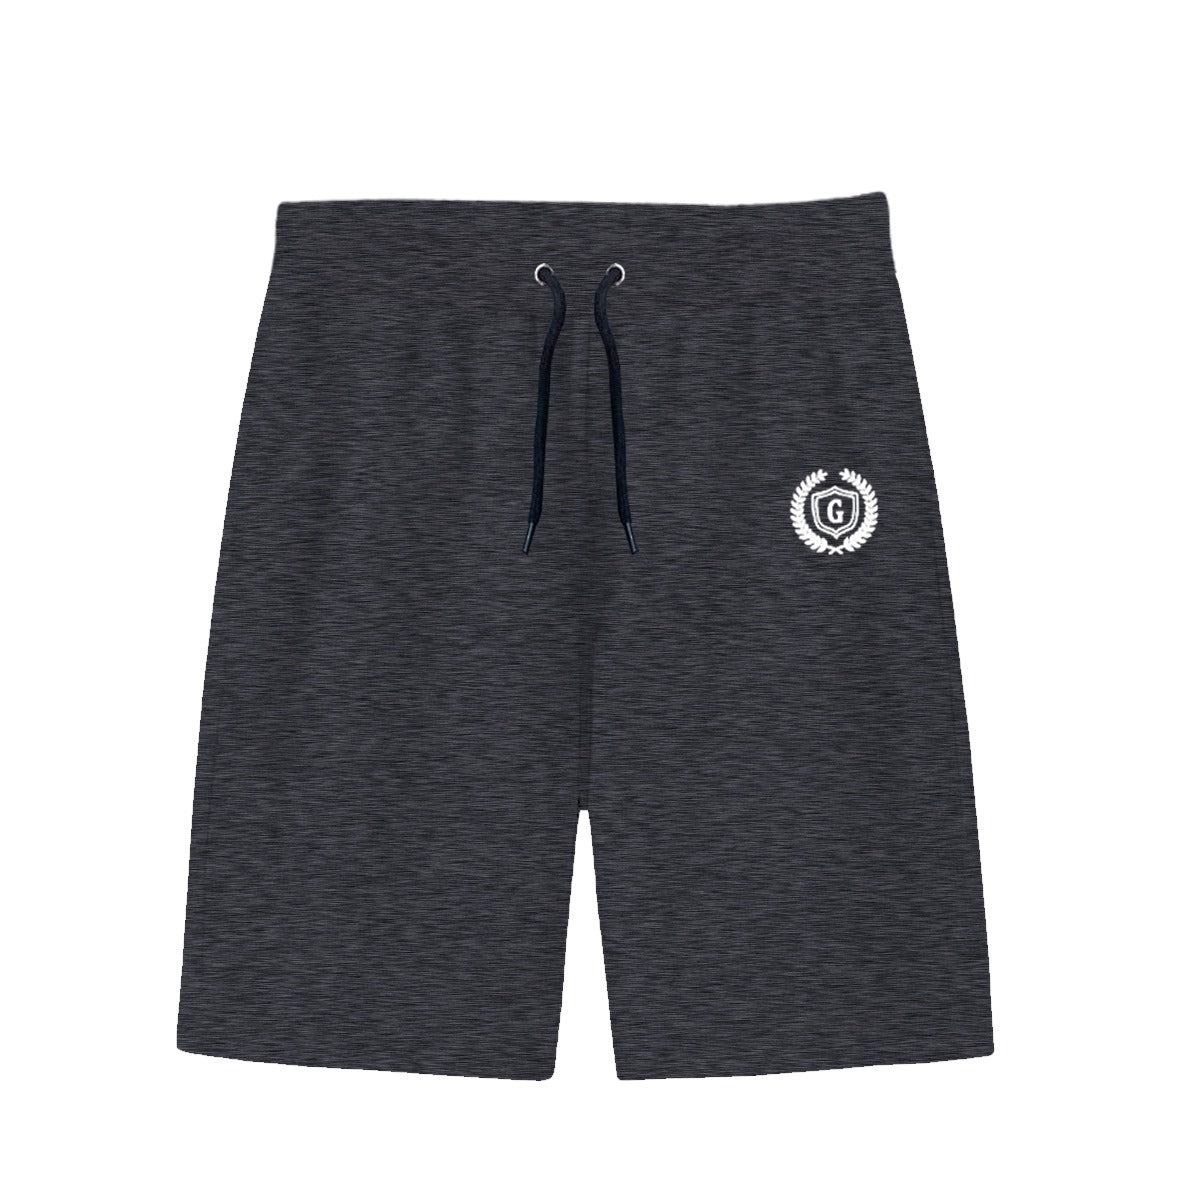 HG Signature Emb Three Quarter Summer Shorts - Charcoal Gray